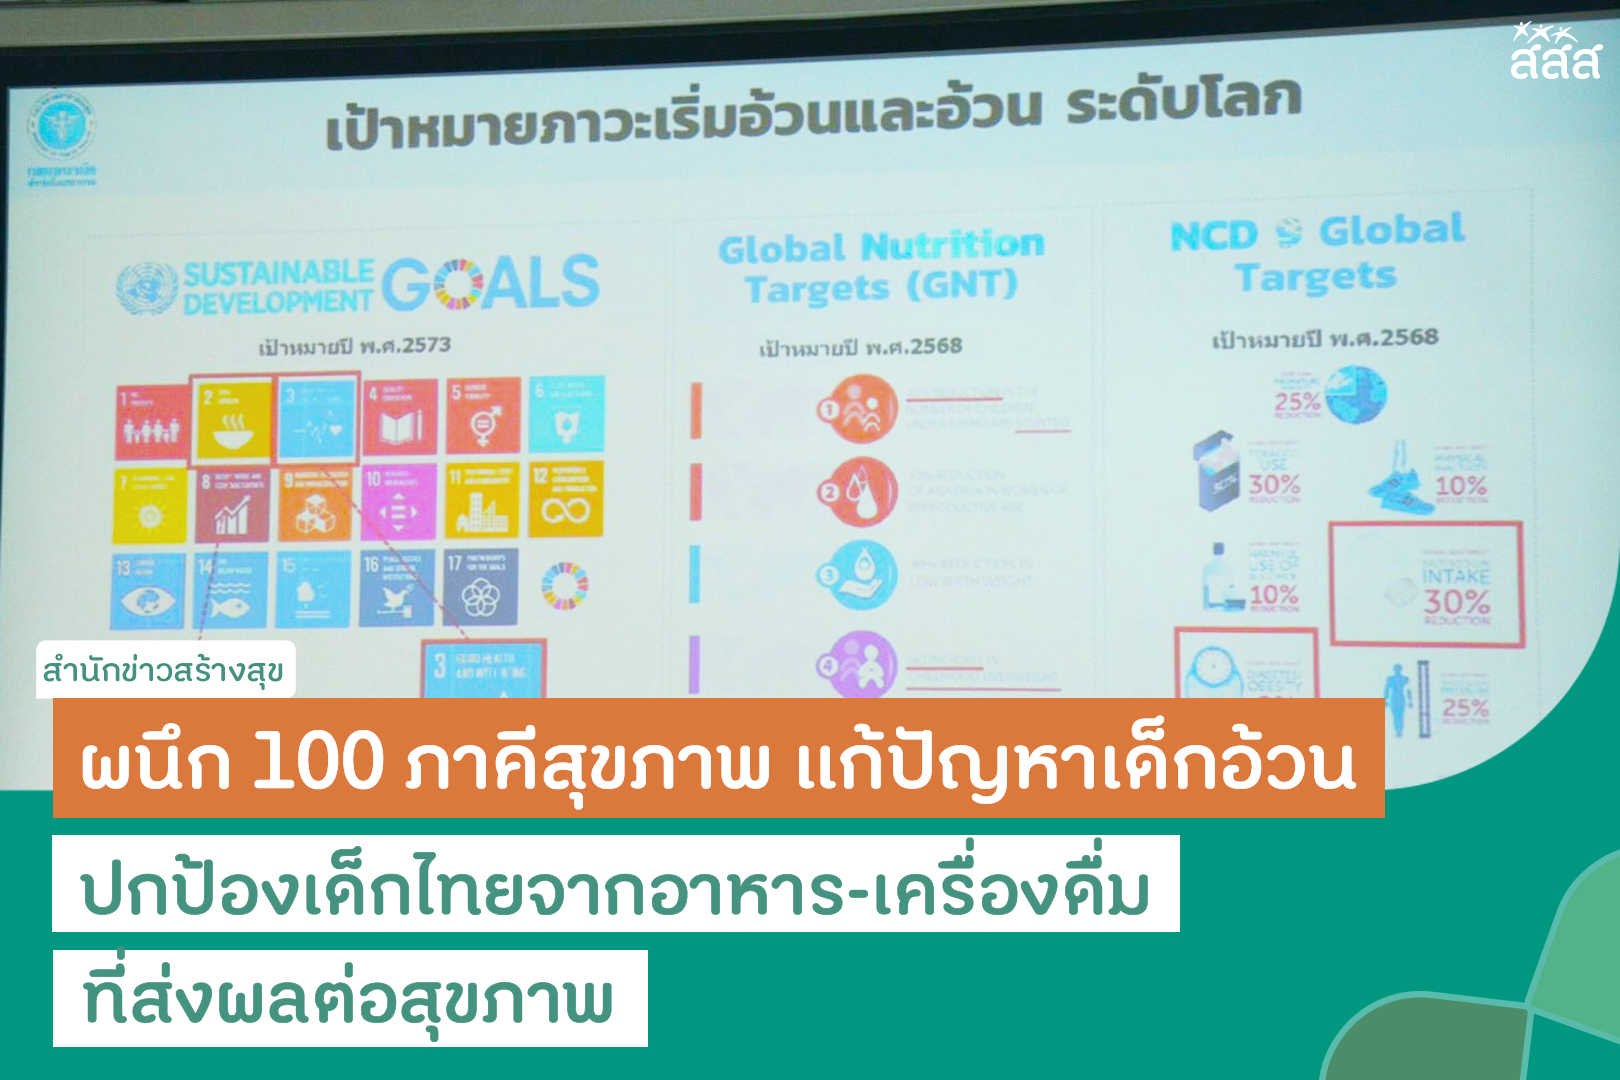 ผนึก 100 ภาคีสุขภาพ แก้ปัญหาเด็กอ้วน ปกป้องเด็กไทยจากอาหาร-เครื่องดื่ม ที่ส่งผลต่อสุขภาพ thaihealth